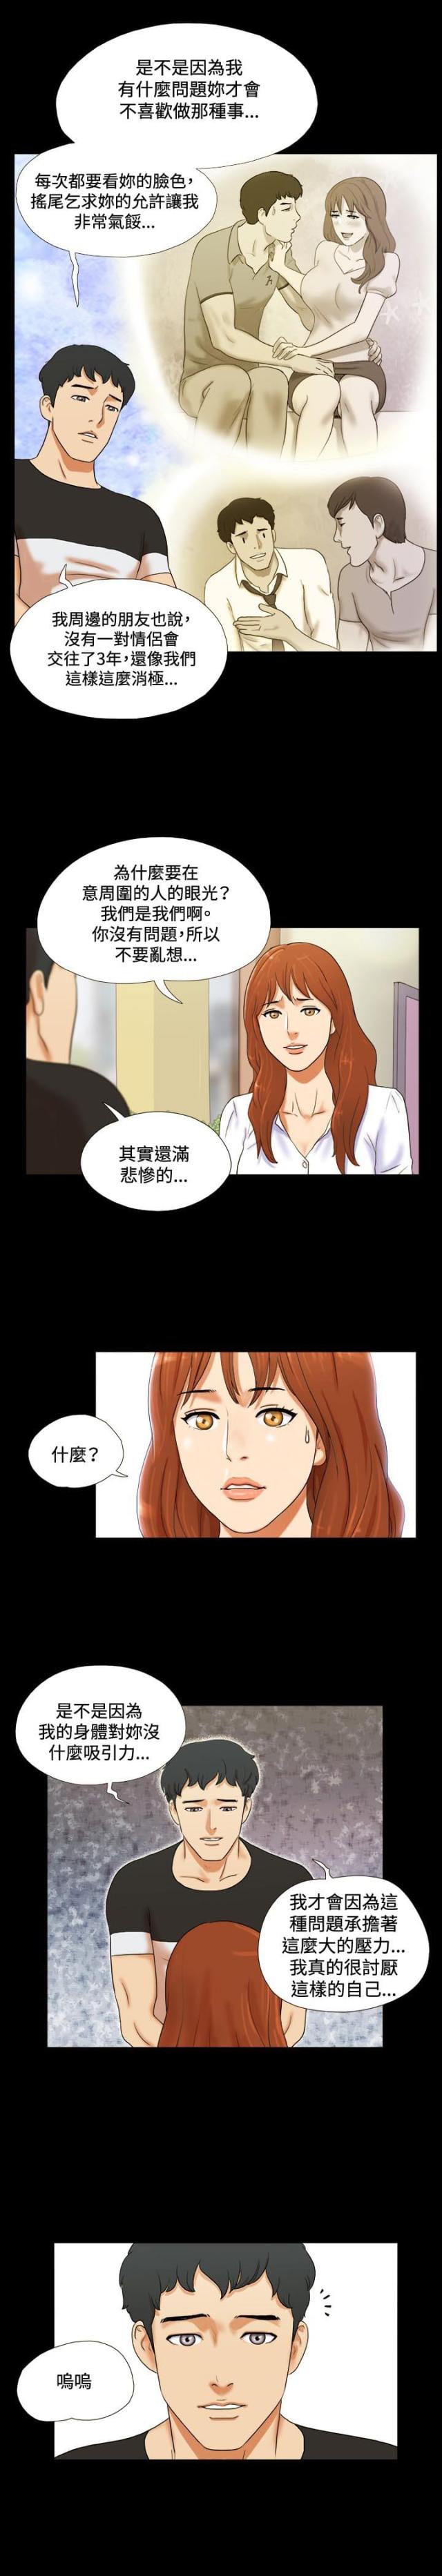 情侣游戏​韩国伦理漫画无遮羞资源